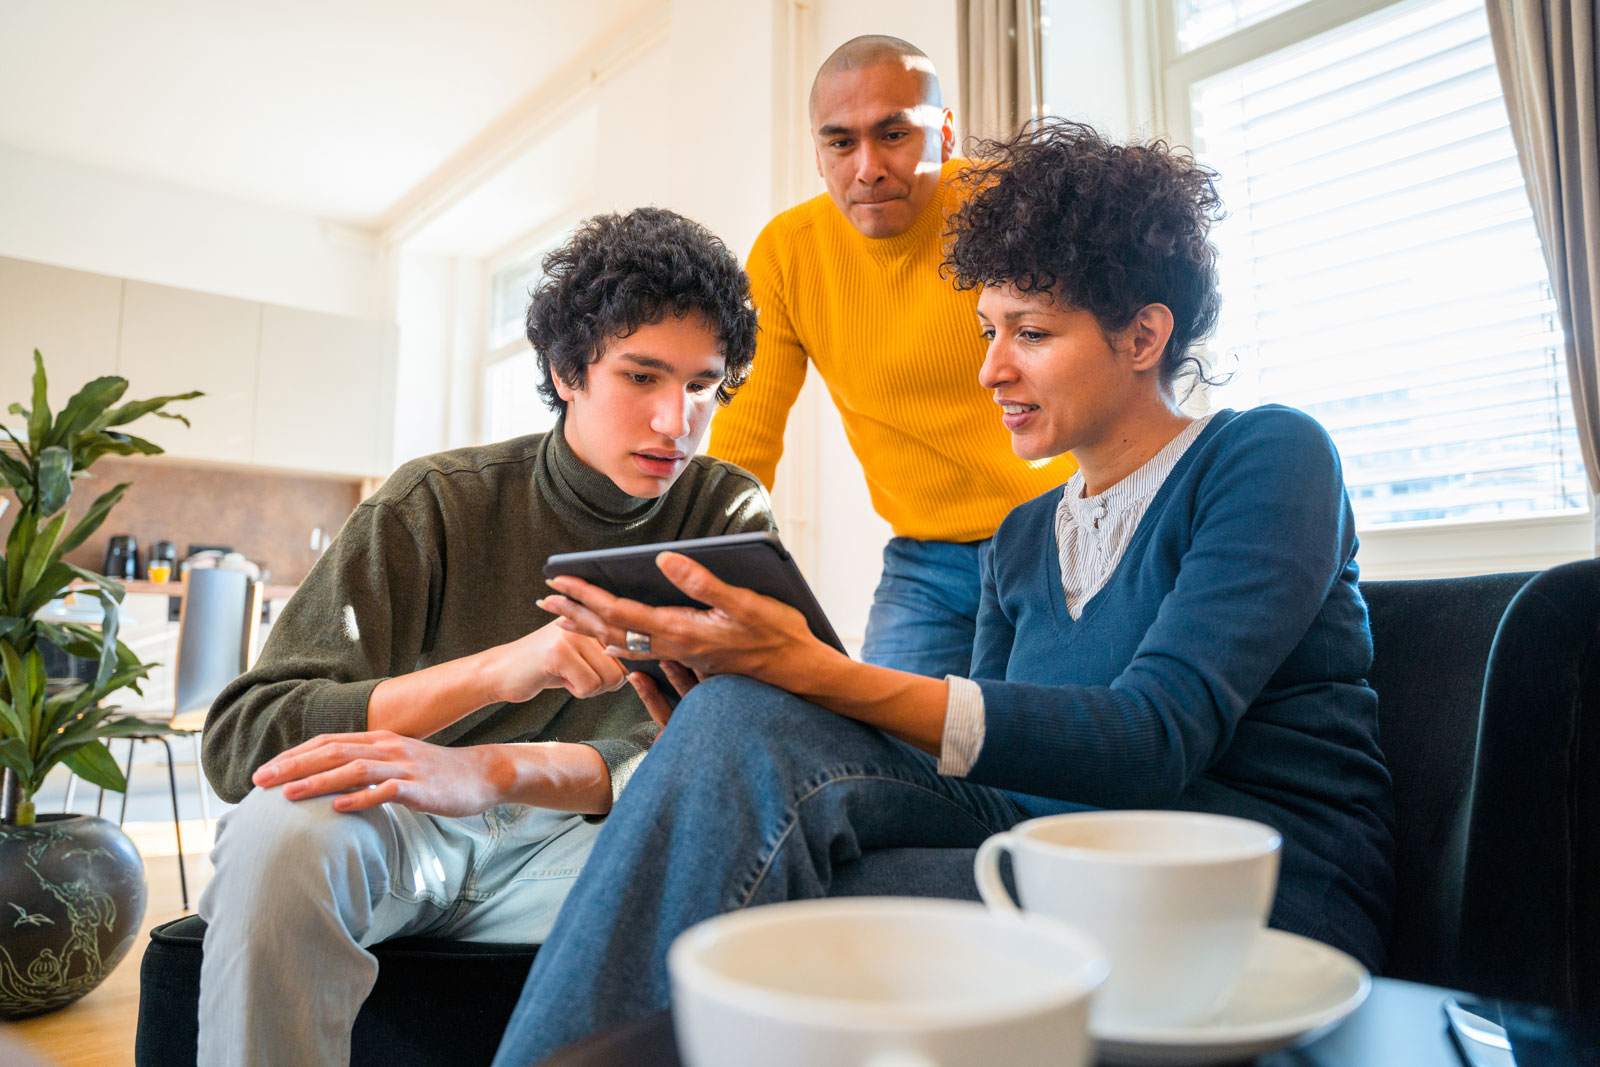 El aumento en la adopción de la tecnología de IA generativa crea entusiasmo y subraya la importancia de las conversaciones familiares sobre la seguridad en línea, según Microsoft